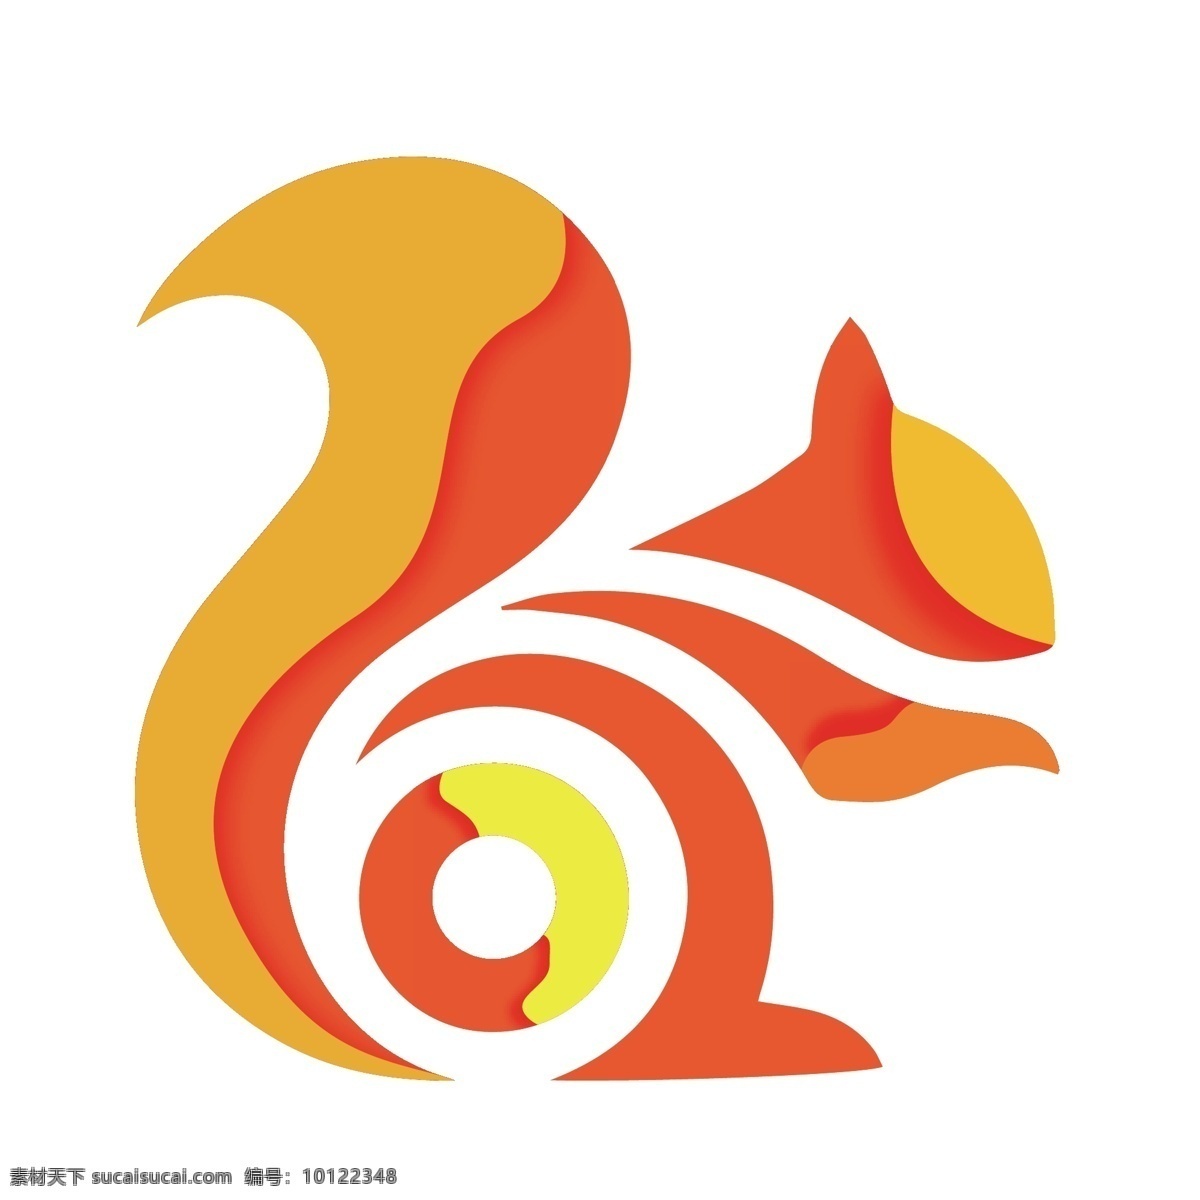 剪纸 橙色 uc 浏览器 logo 图标 uc浏览器 企业logo 立体 2.5d 创意 扁平图标 手绘 软件 logo图标 千库原创 免抠图png